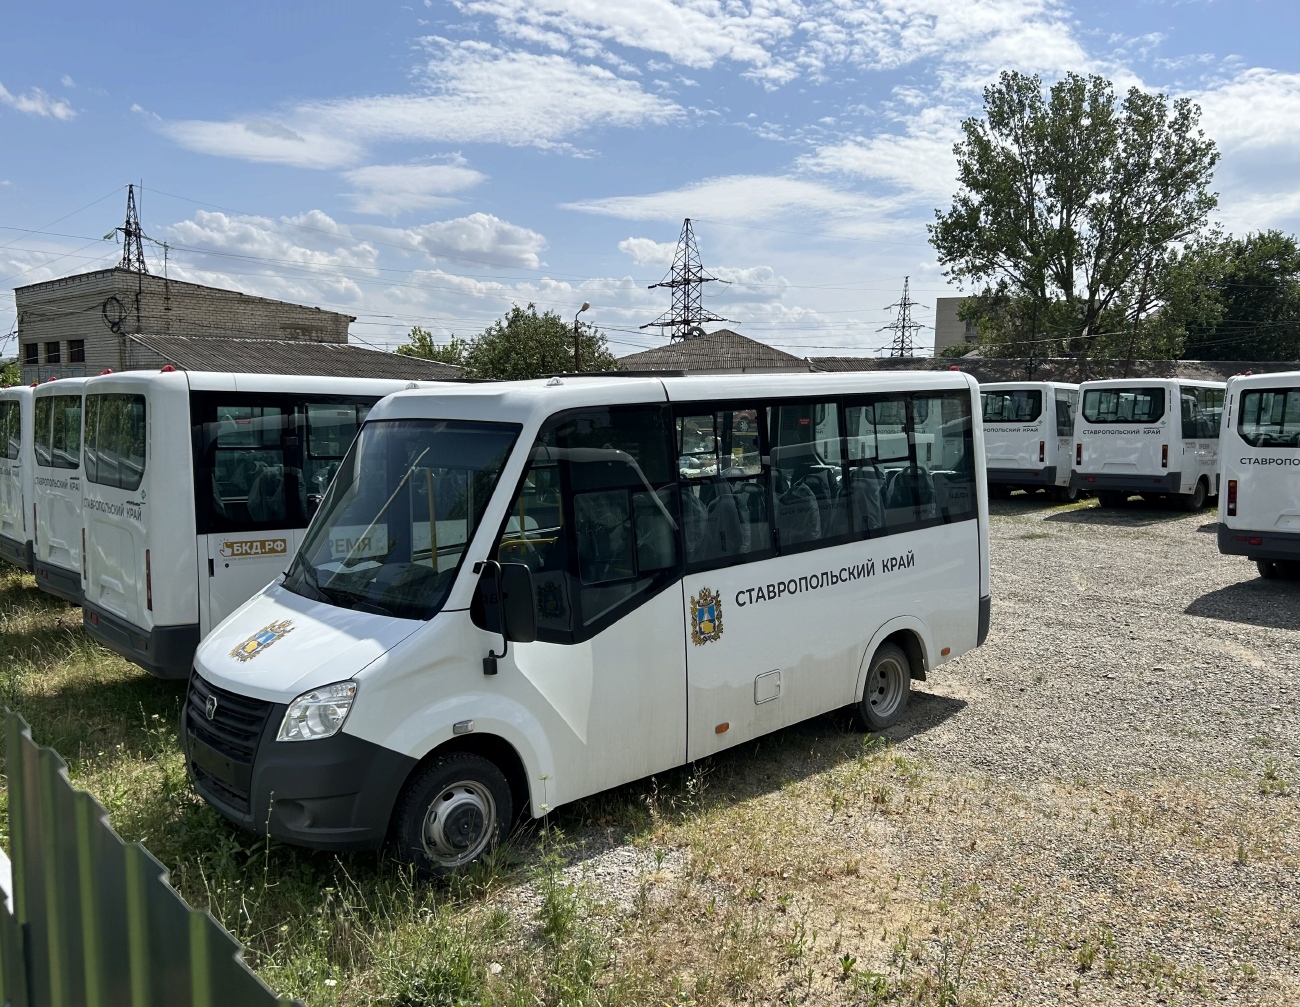 Ставропольский край — Автобусы без номеров; Ставропольский край — Предприятия автобусного транспорта